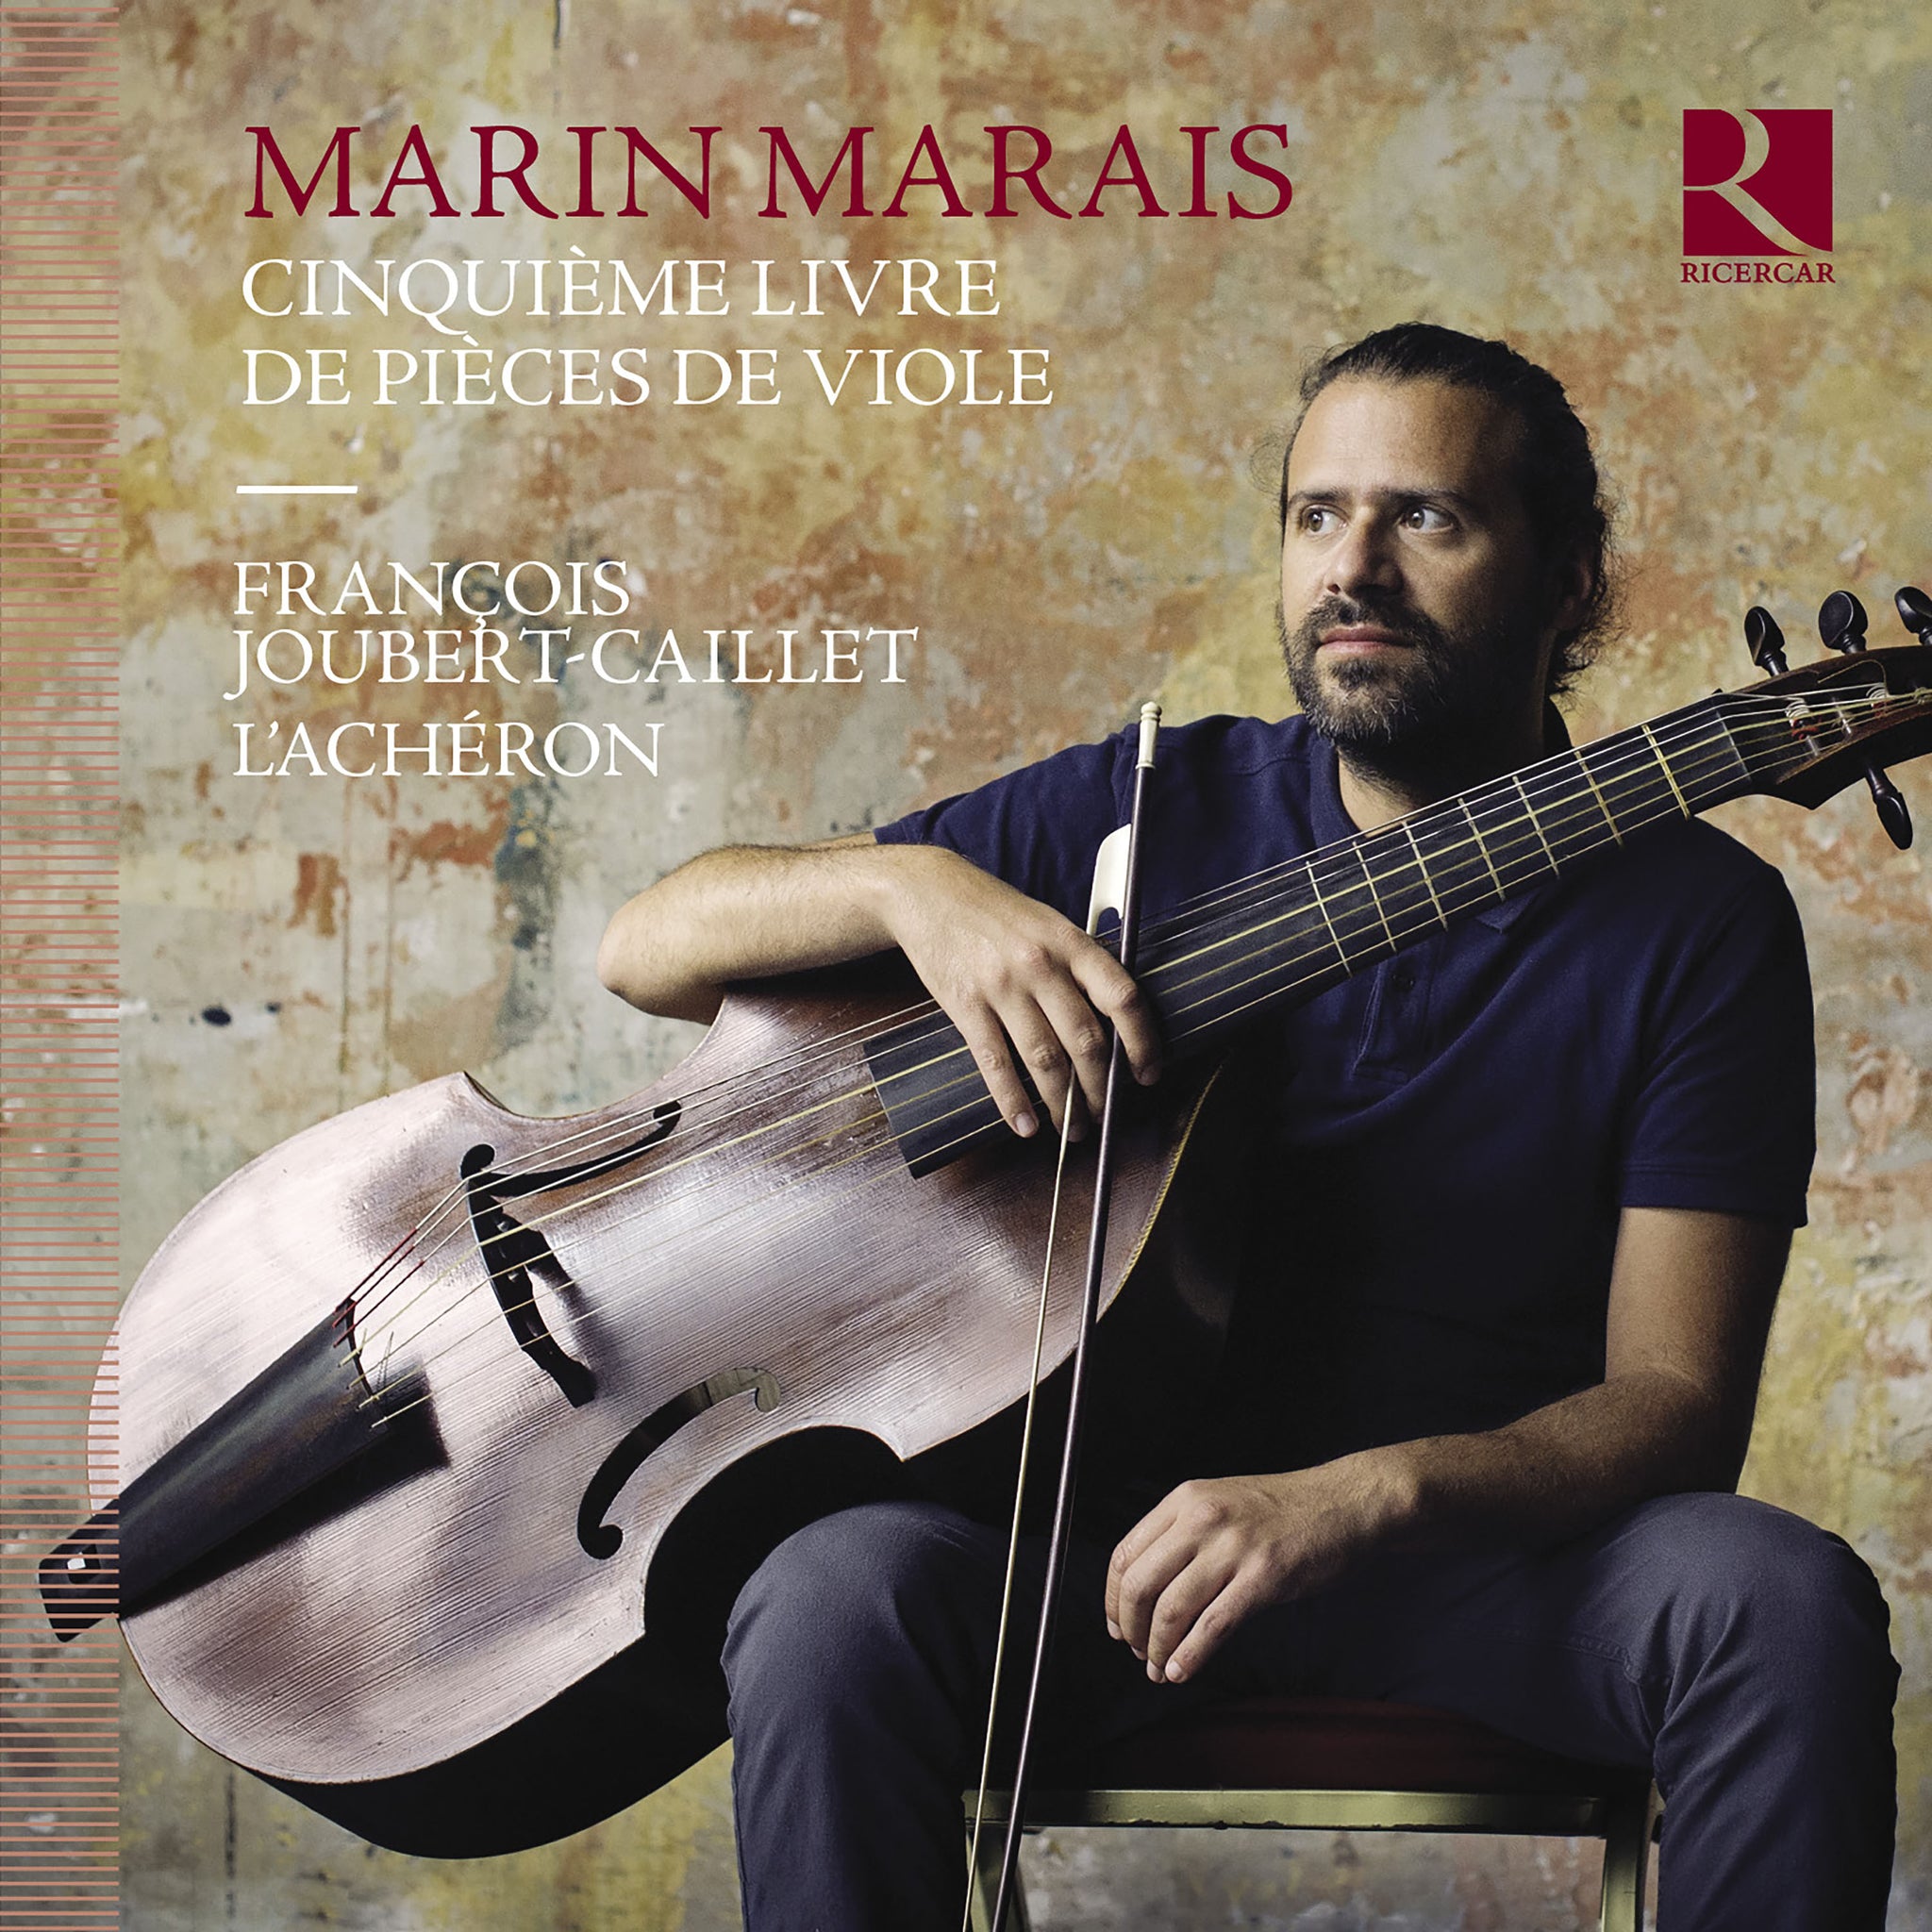 Marais: Cinquieme livre de pieces de viole / Joubert-Caillet, L'Acheron